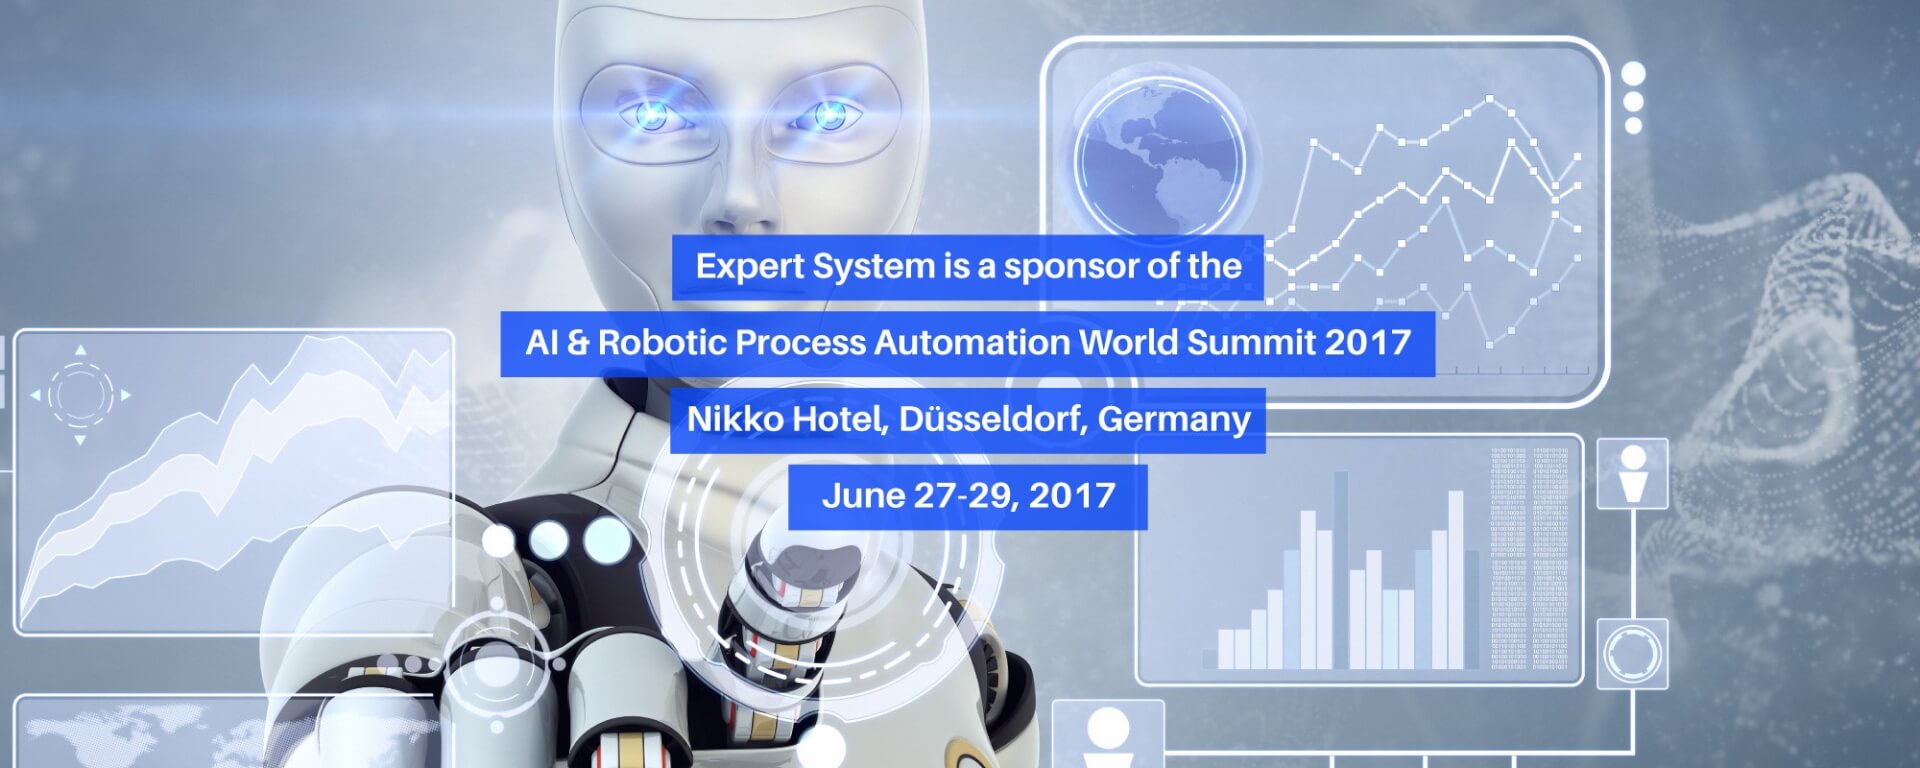 AI & Robotic Process Automation World Summit 